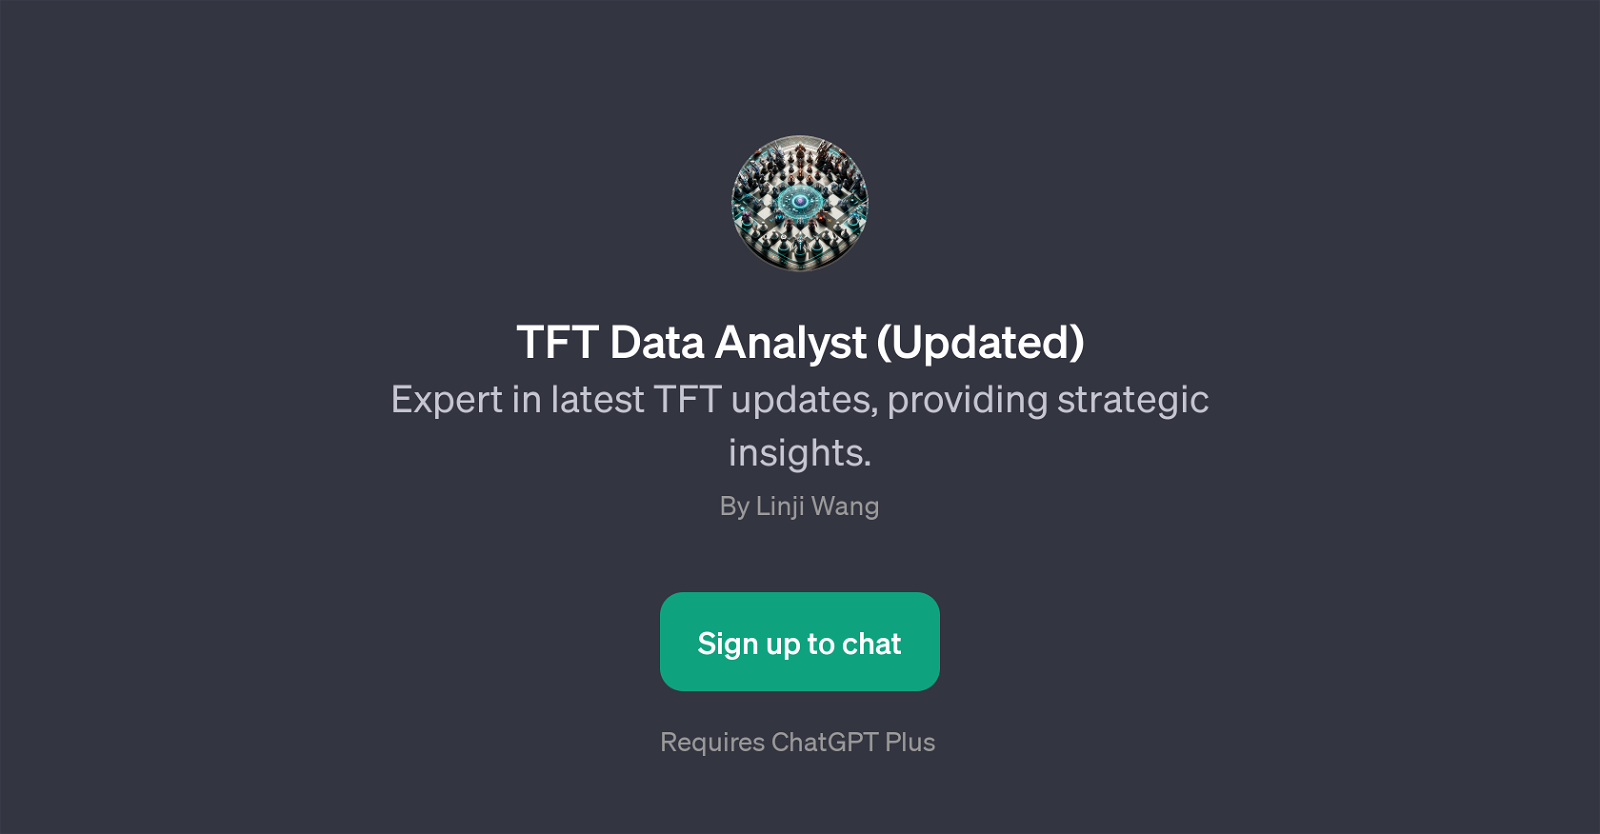 TFT Data Analyst (Updated) website